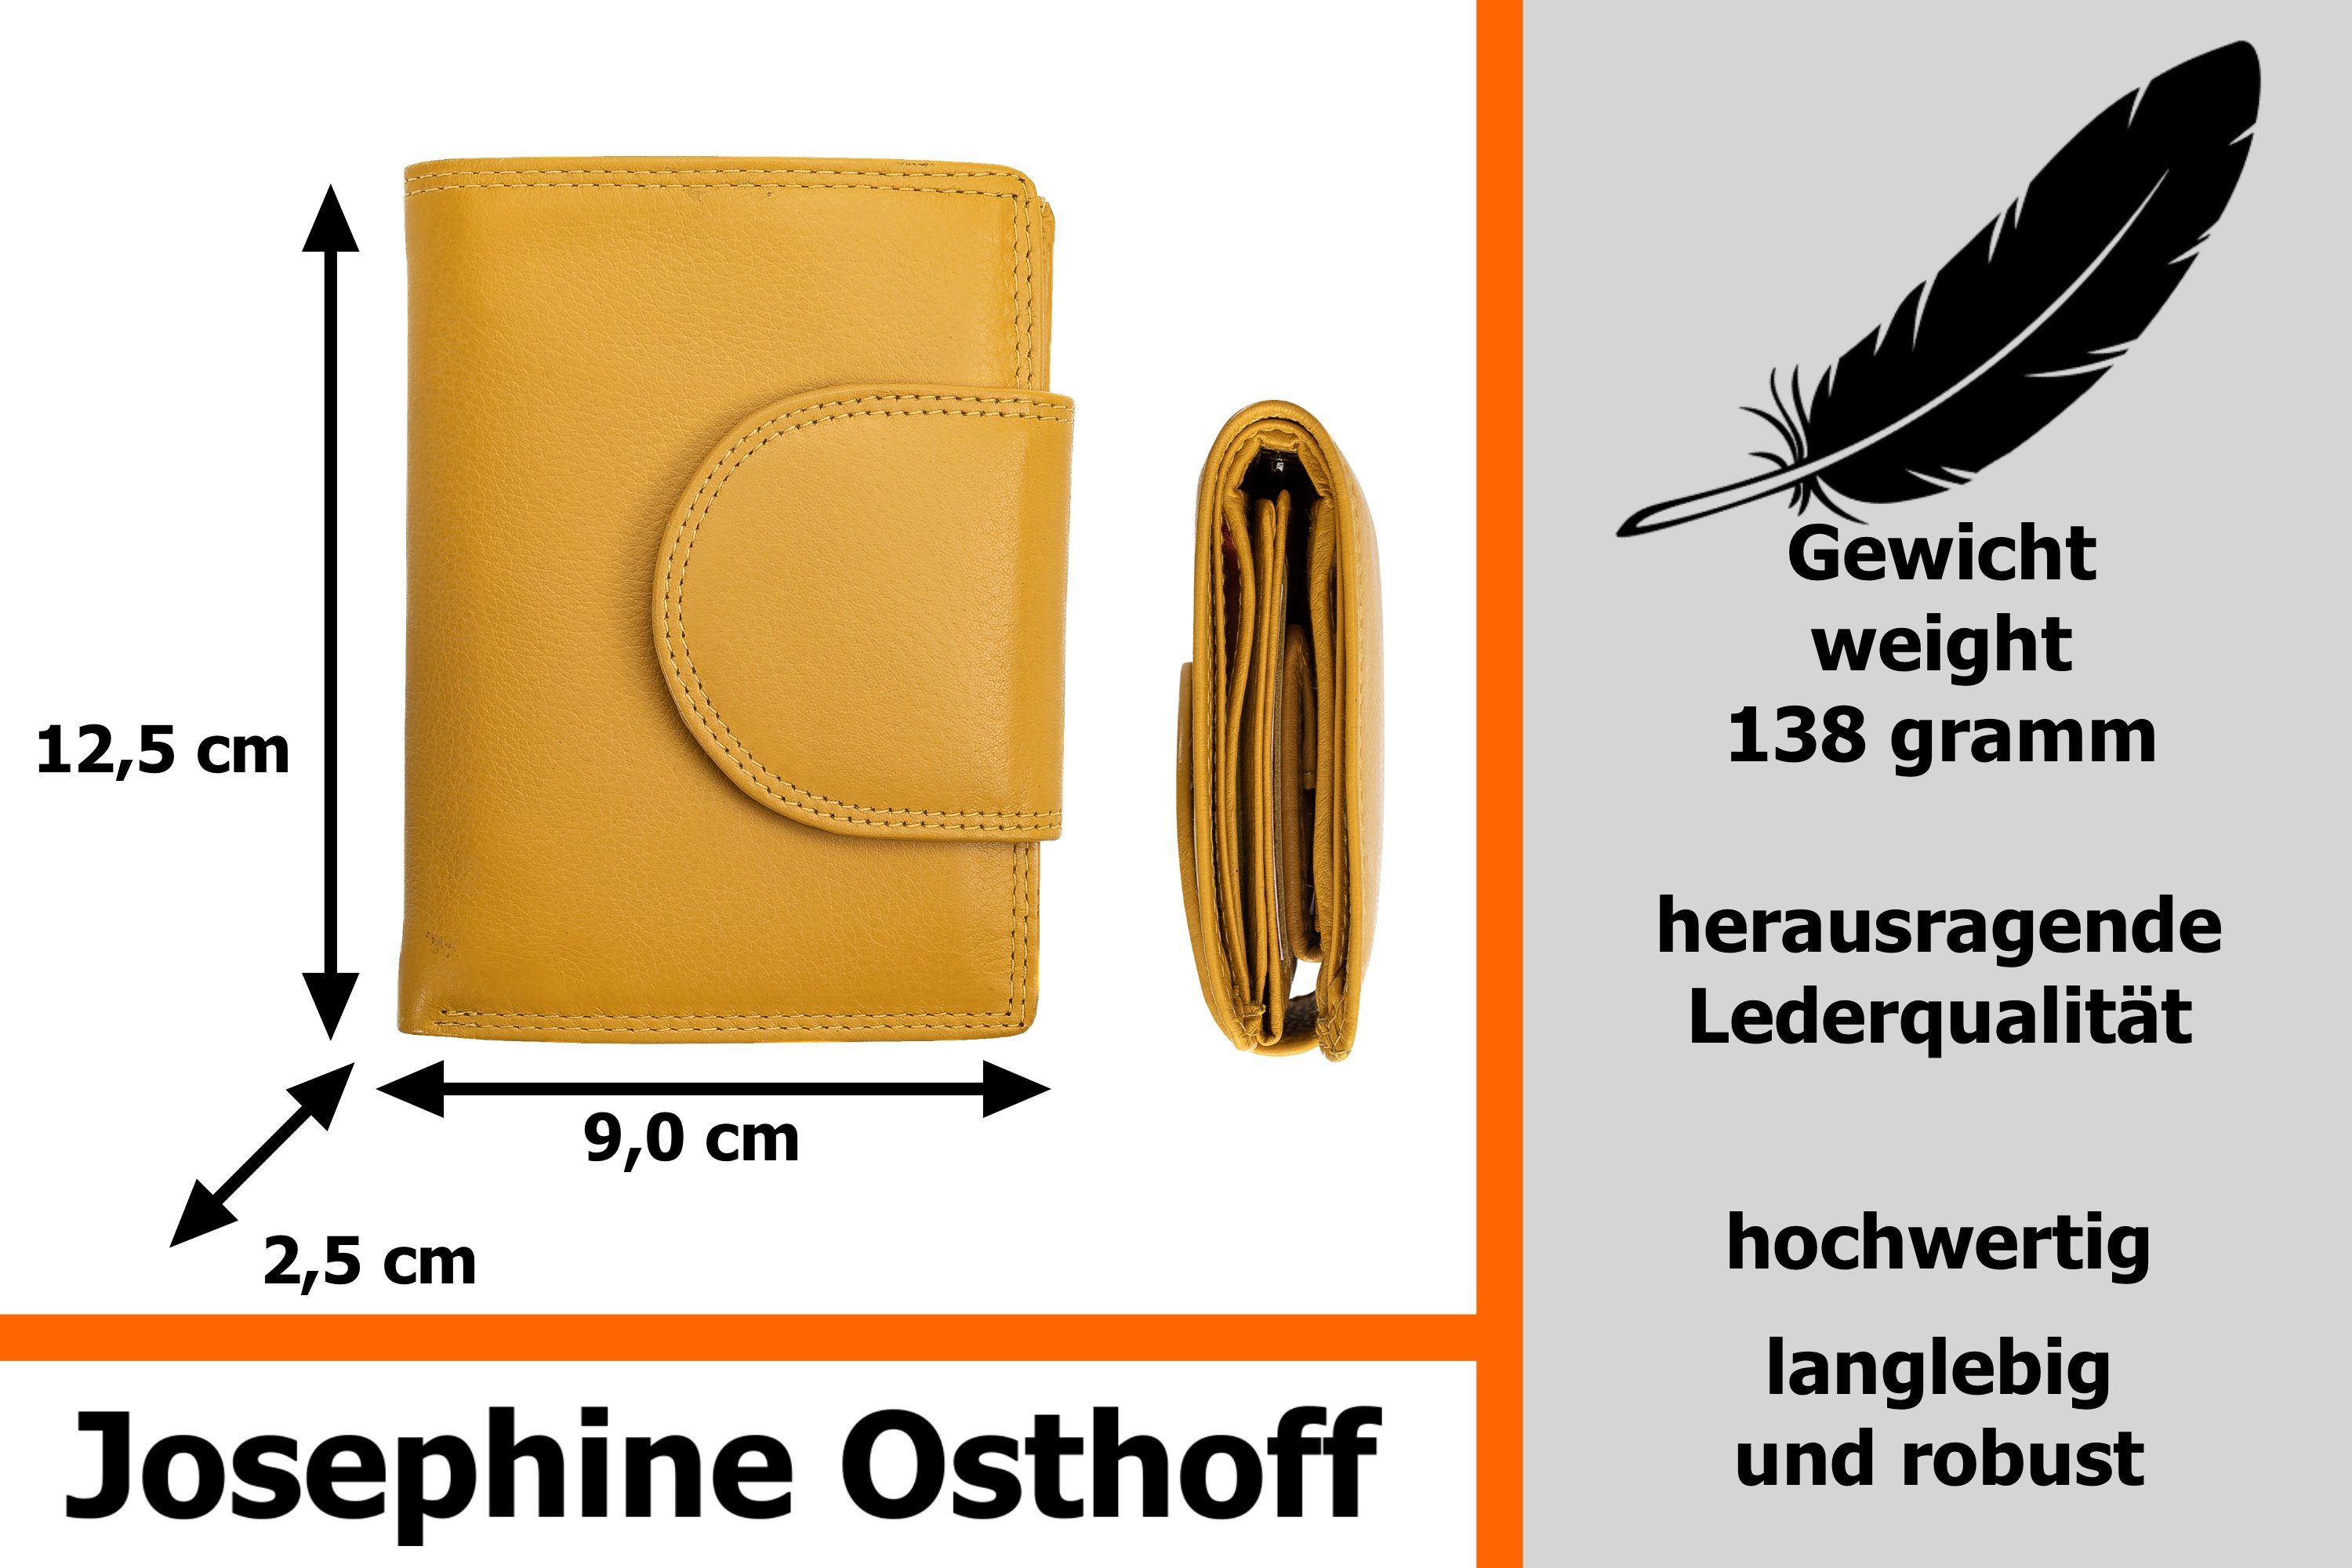 Josephine Osthoff Brieftasche gelb Wiener Geldbörse Minibrieftasche